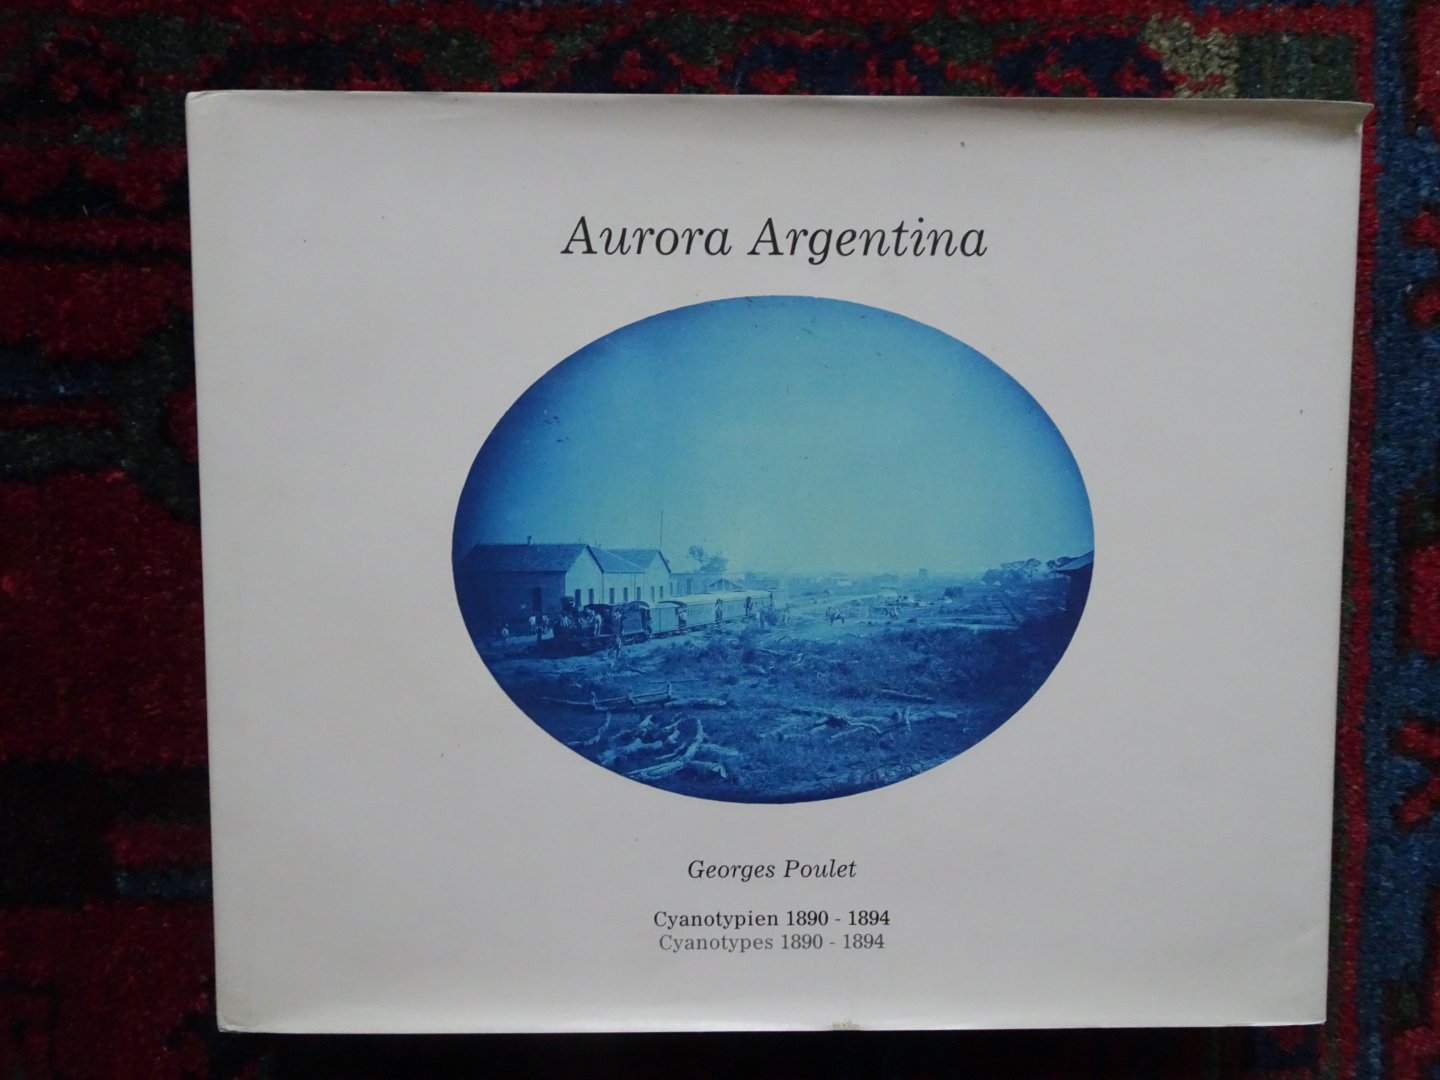 Poulet, Georges - AURORA ARGENTINA Von Santa Fé nach Tucumán. Cyanotypien / Cyanotypes 1890-1894 / Santa Fé tot Tucumán 1890-1894